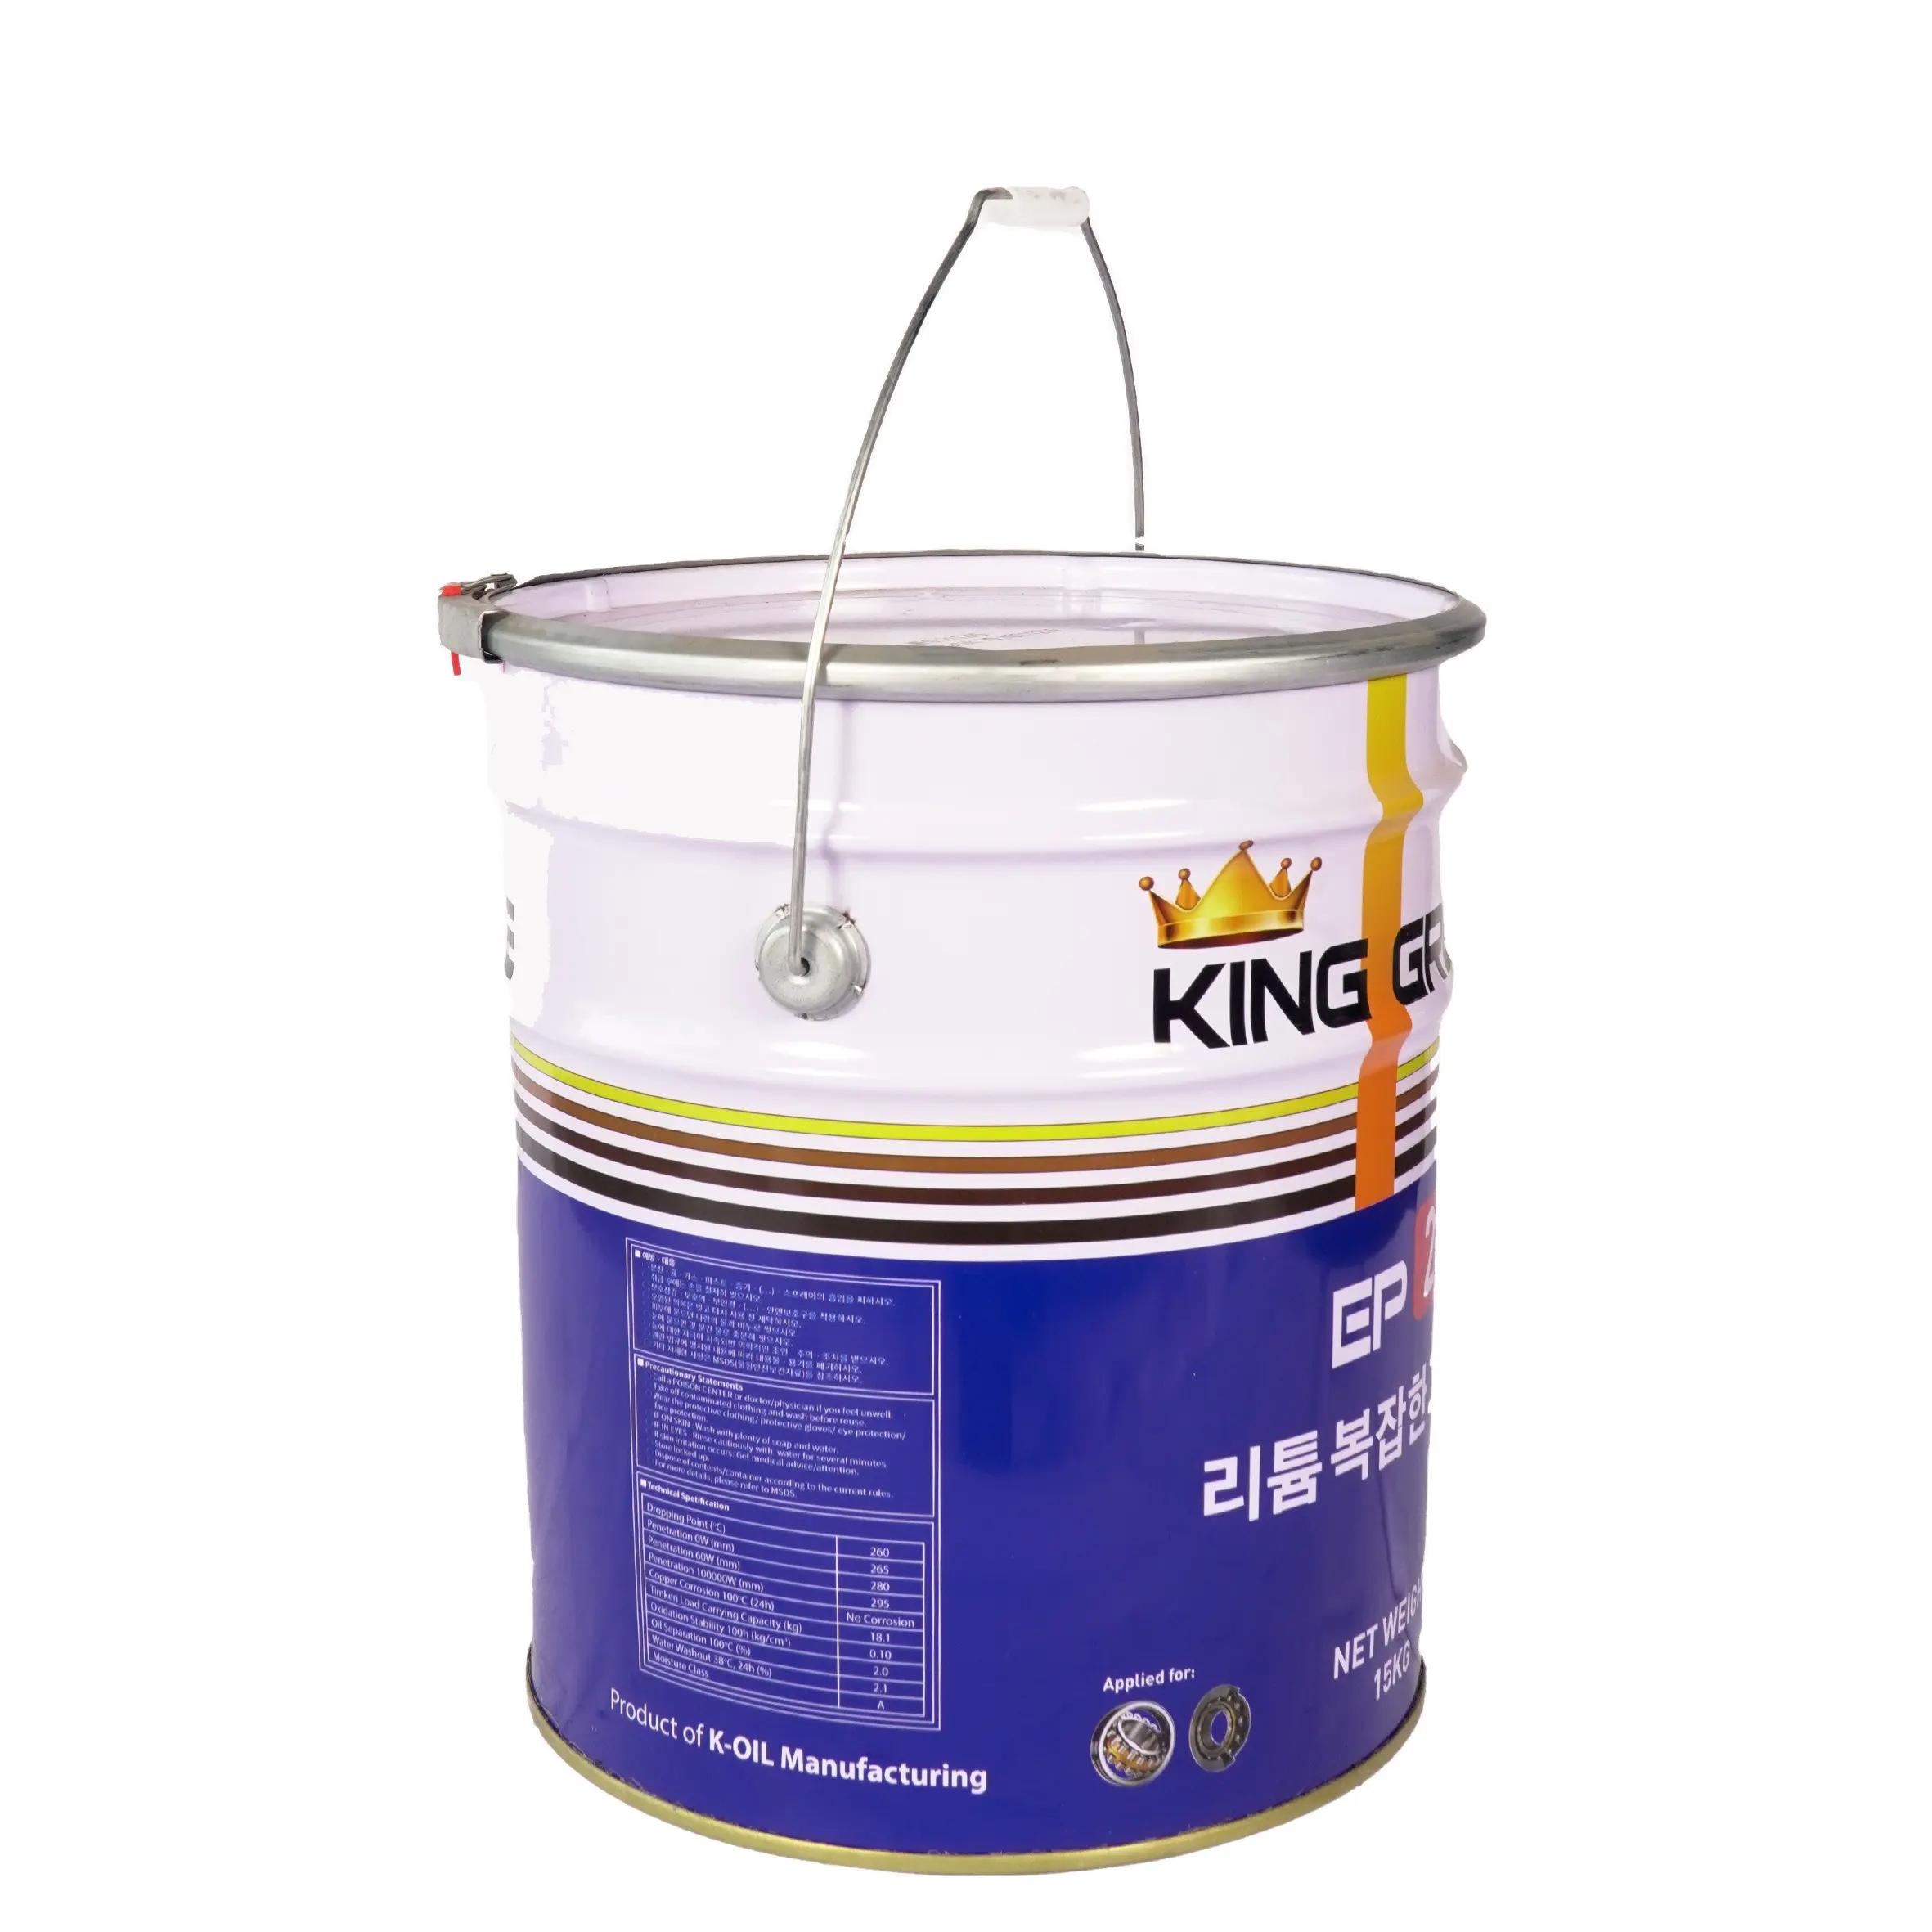 KING GREASE LITHIUM EP2 fabriqué au Vietnam, Excellente lubrification et prix bon marché pour les équipements à charge lourde. Lubrifiant à graisse